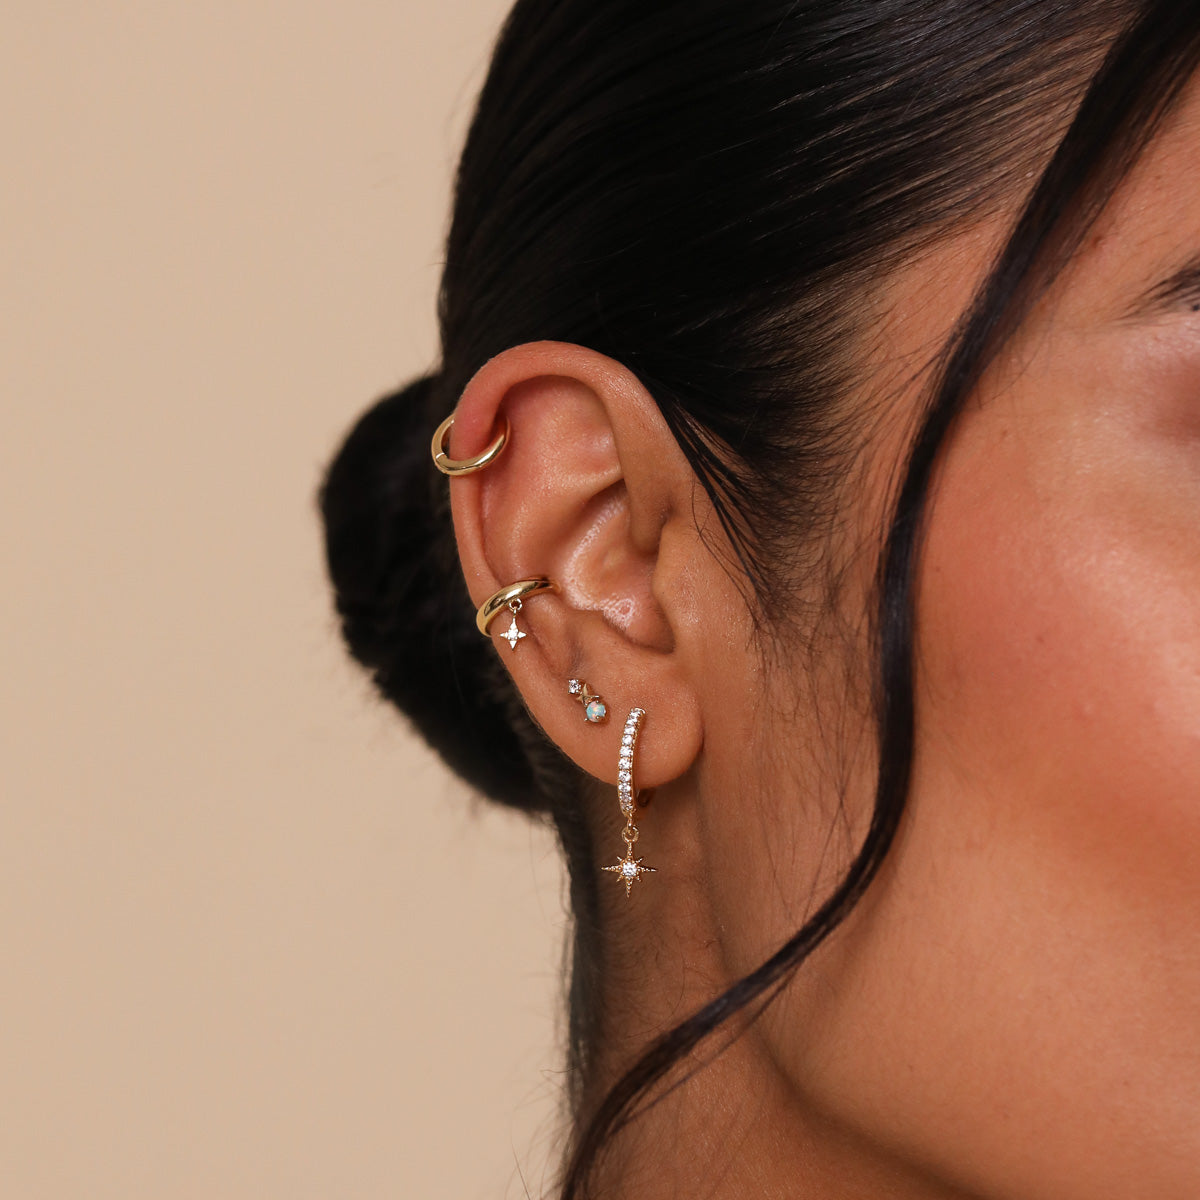 Cosmic Star Opal Stud Earrings in Gold worn with other earrings